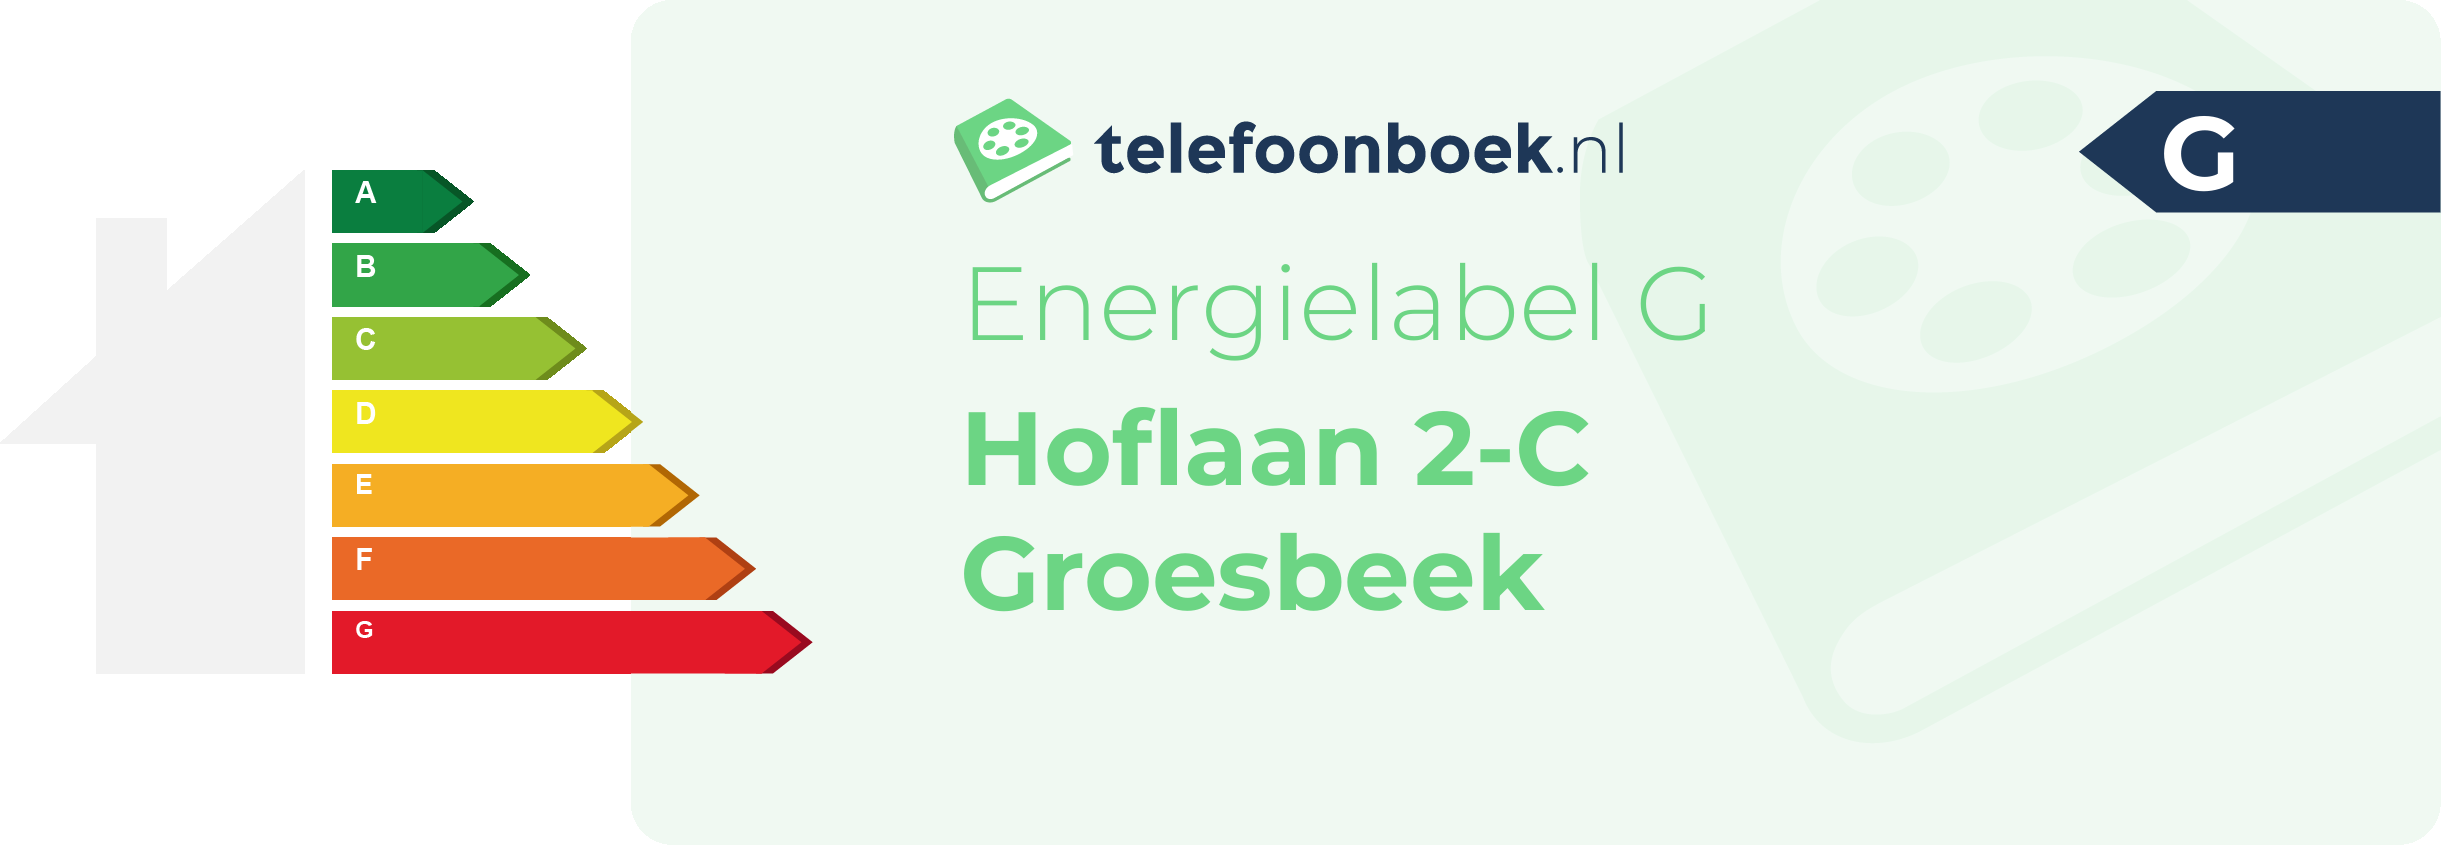 Energielabel Hoflaan 2-C Groesbeek